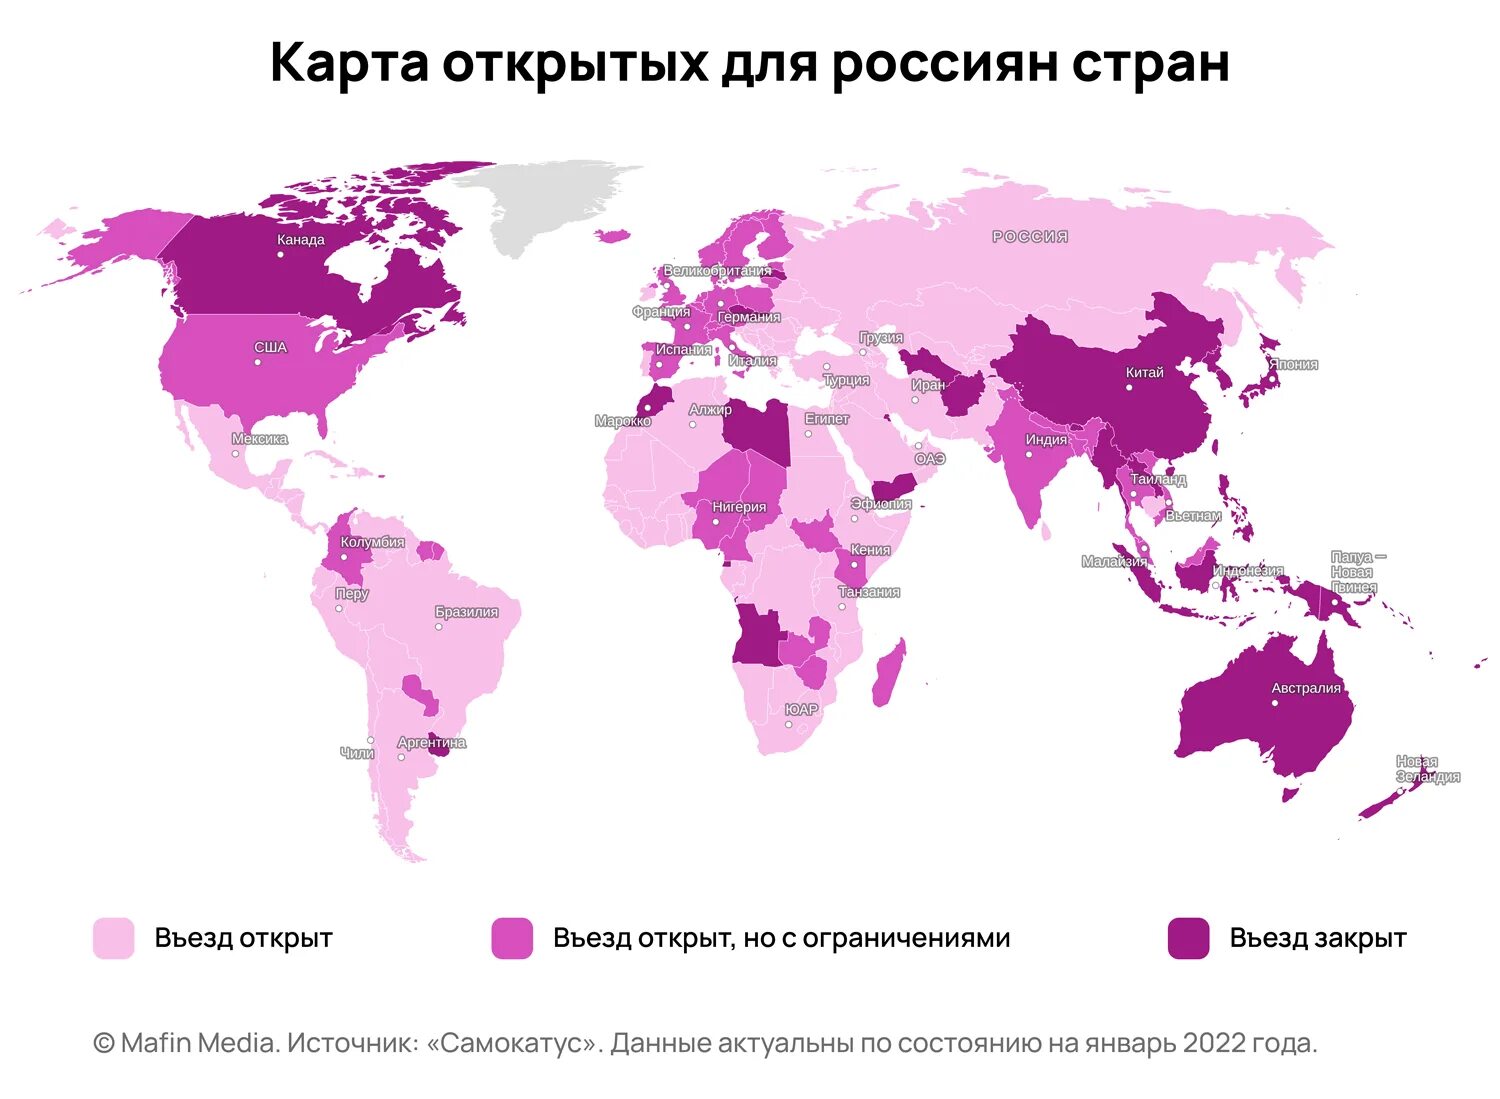 Карта открытых стран для россиян 2022. Открытые страны для россиян 2022. Какие страны открыты для россиян в 2022. Какие страны сейчас открыты для россиян 2022.